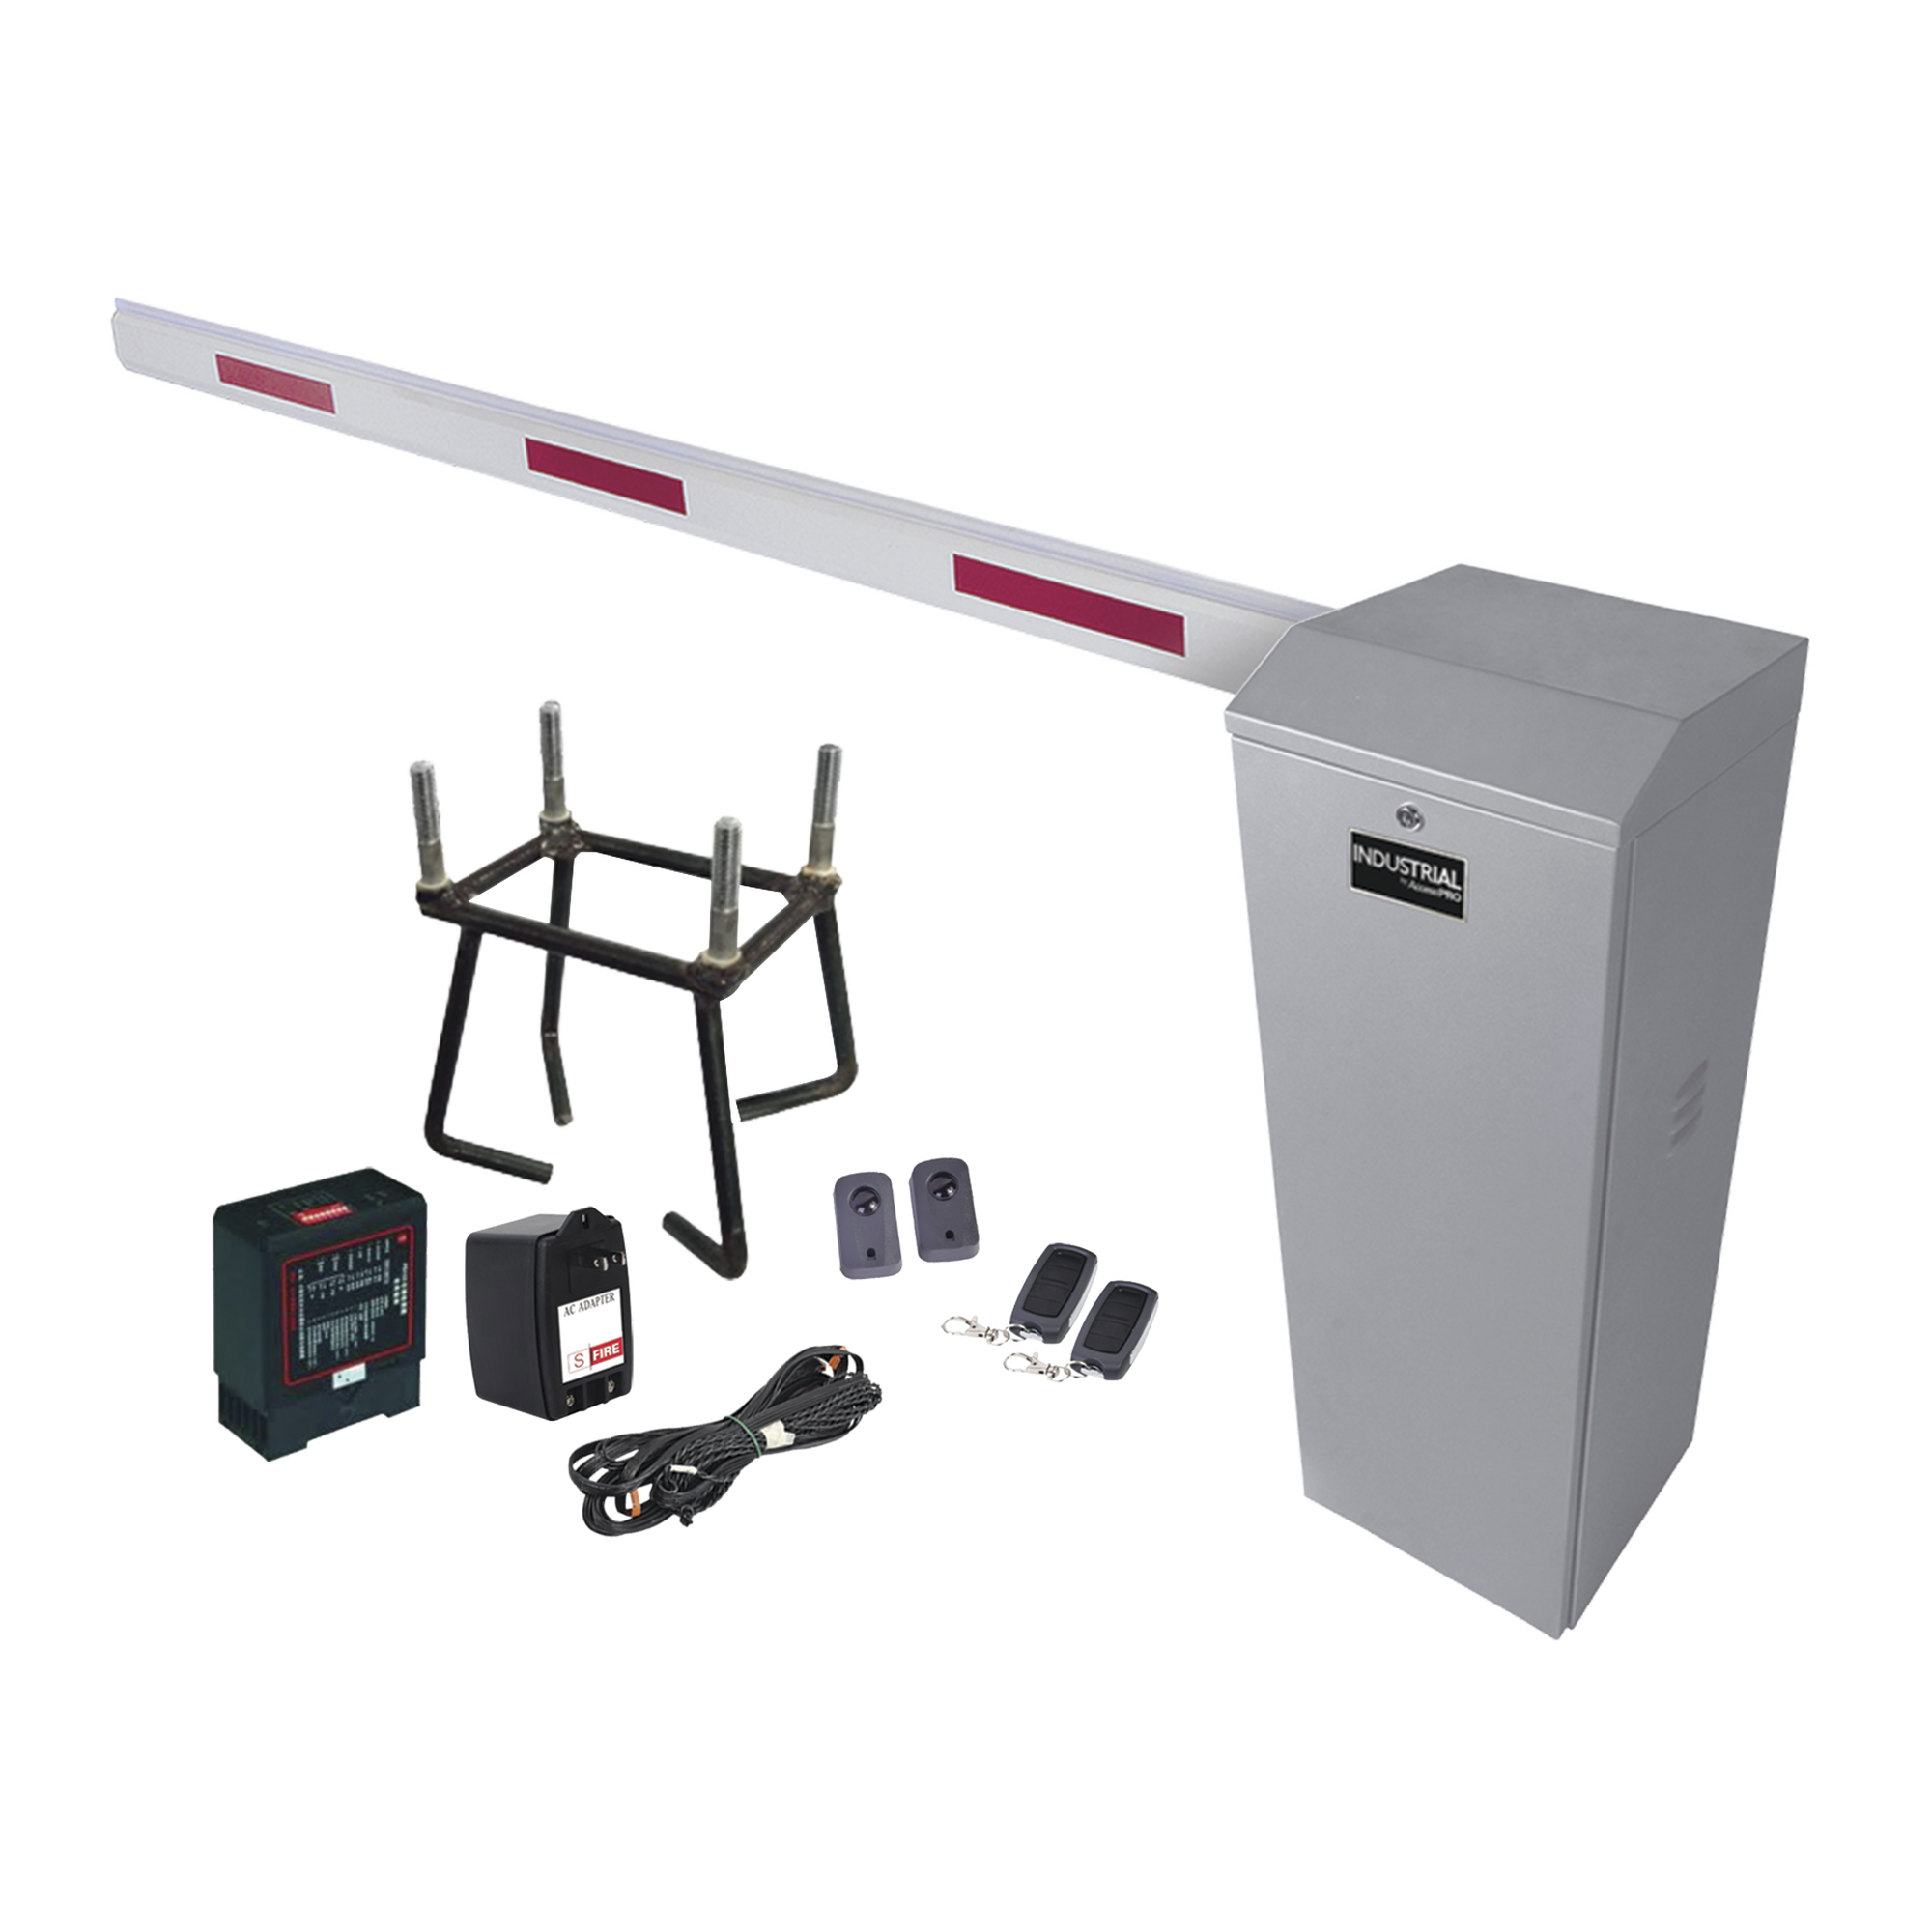 Kit COMPLETO Barrera Izquierda XB / Brazo telescópico 3.6 ~ 5.5 M / Incluye Sensor de masa, Transformador, Lazo, Ancla, Fotoceldas y 2 Controles Inalámbricos